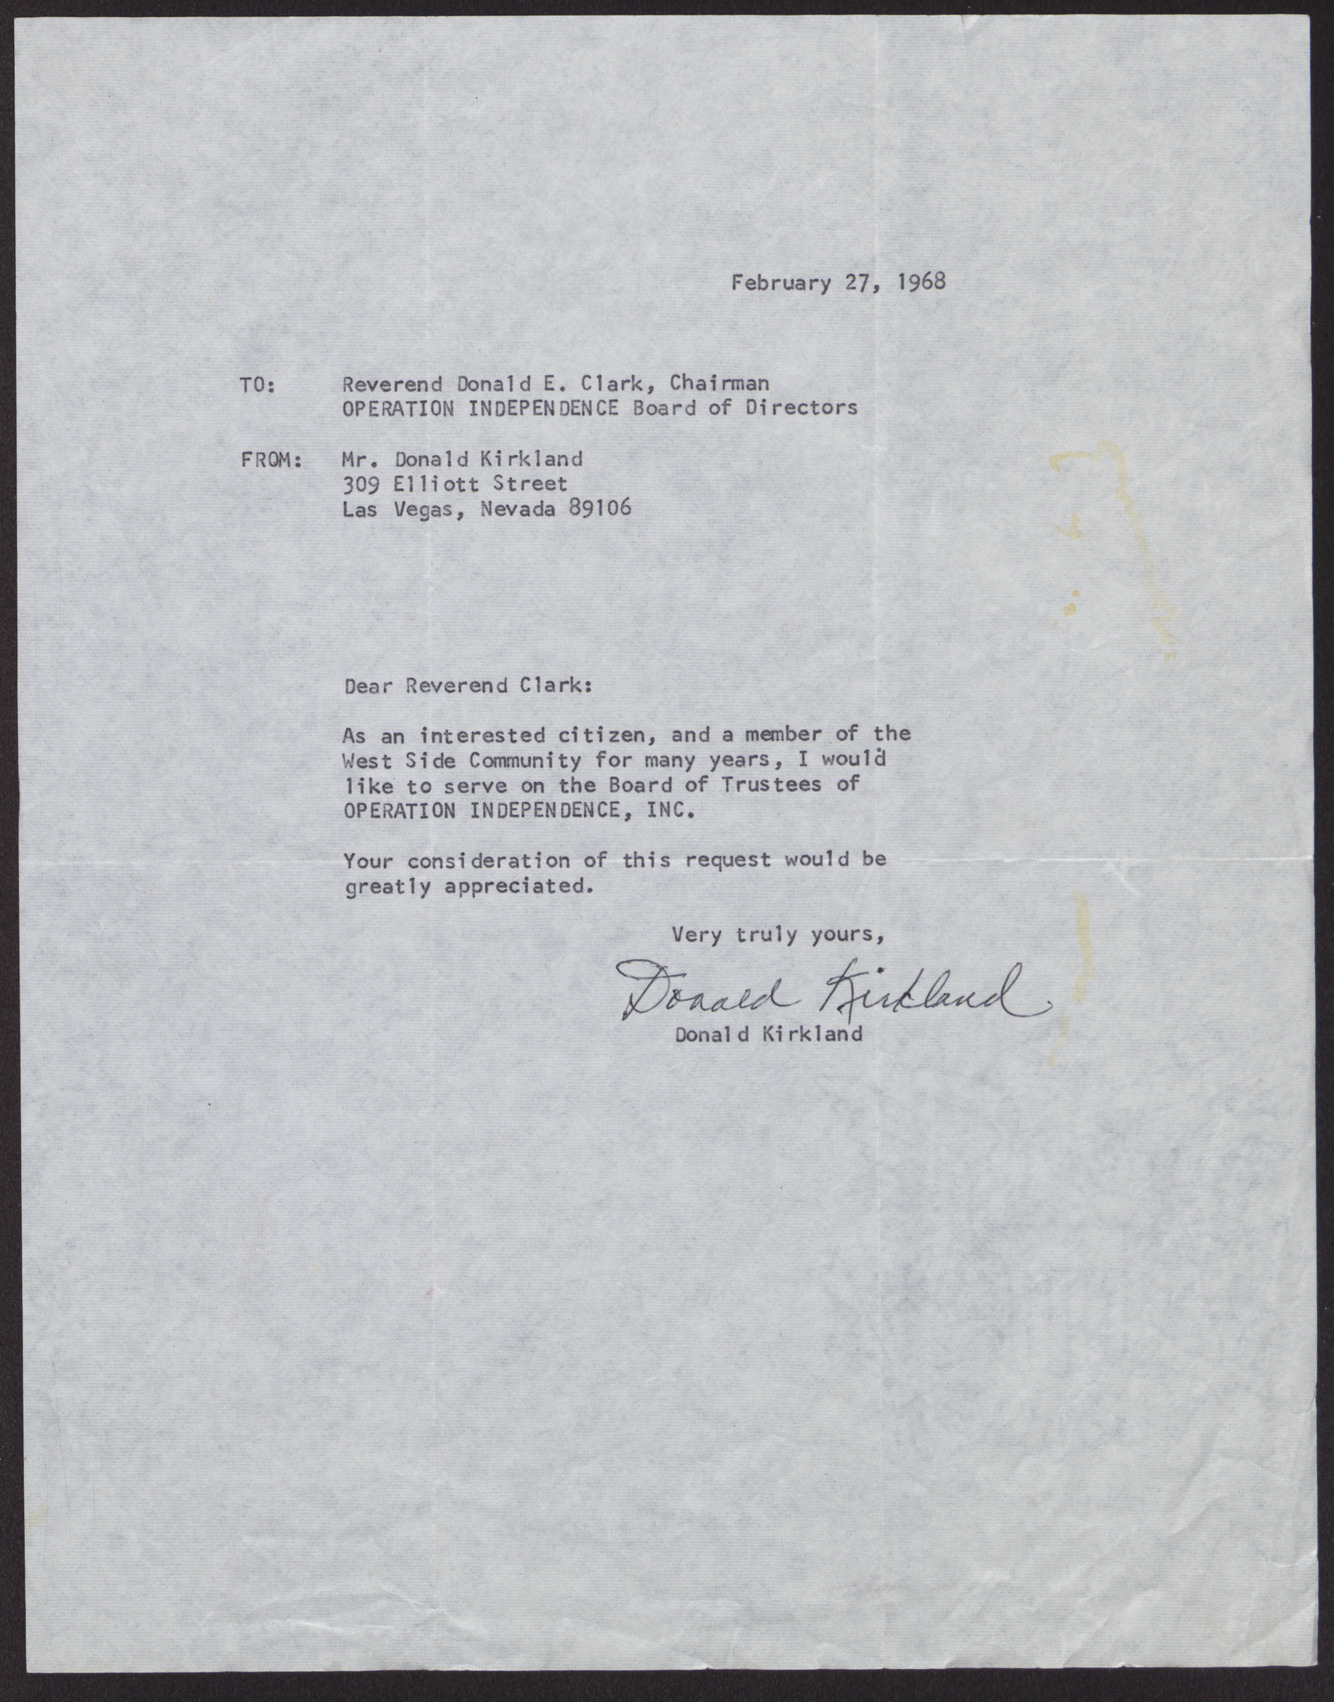 Letter to Reverend Donald E. Clark from Donald Kirkland, February 27, 1968